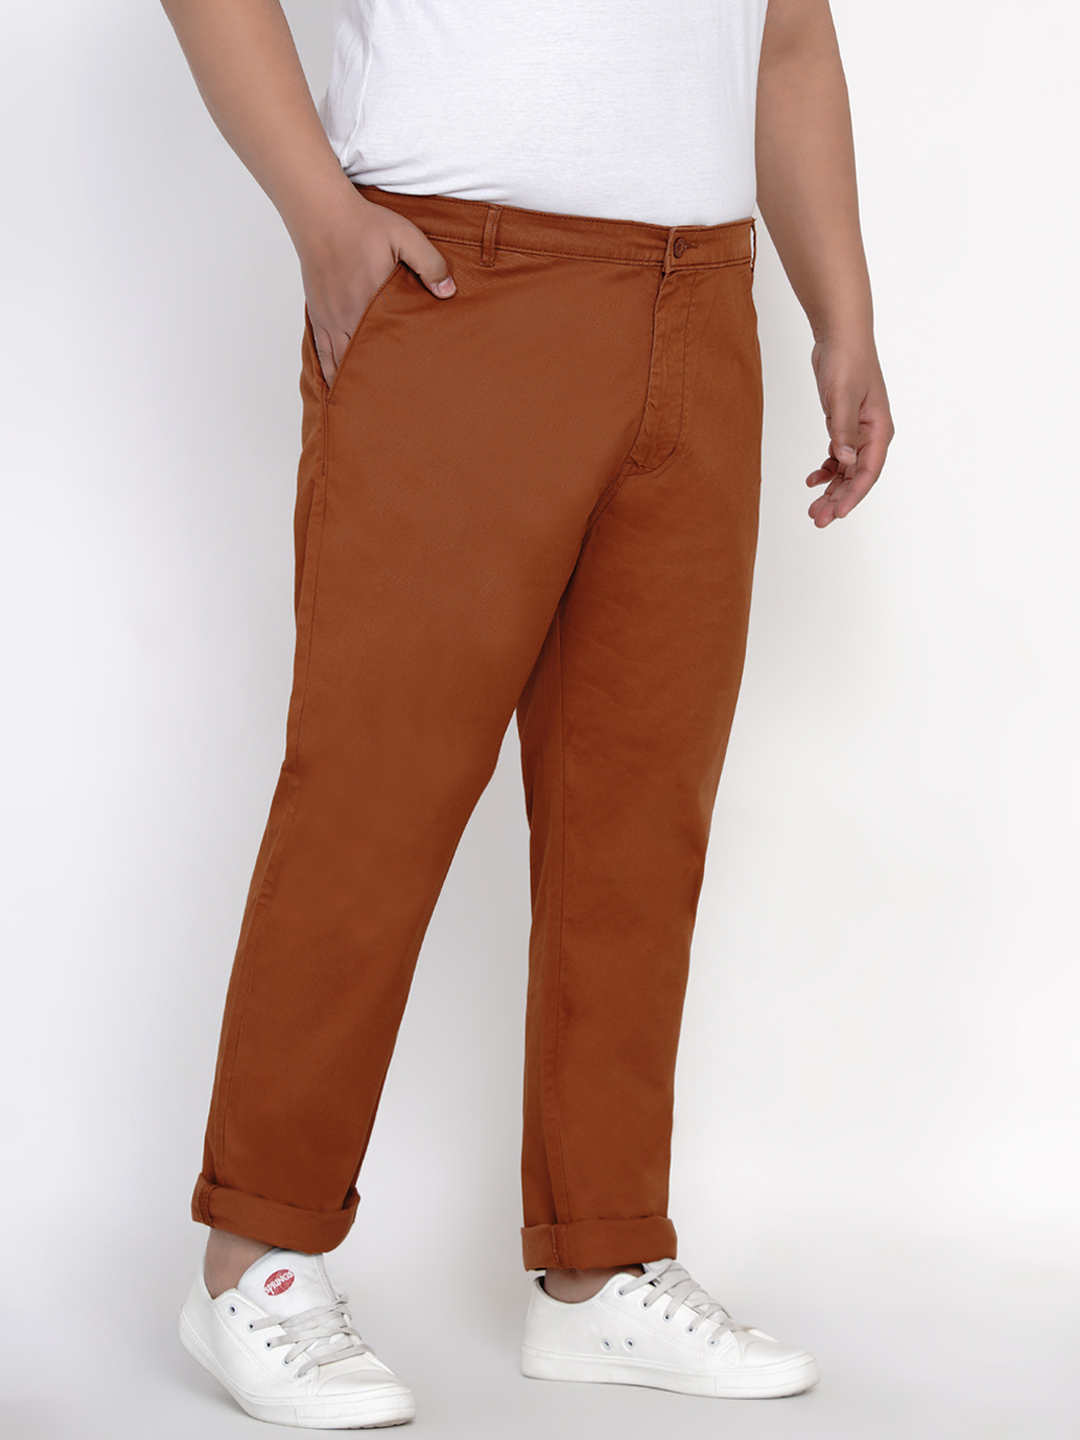 bottomwear/trousers/JPTR2161F/jptr2161f-3.jpg